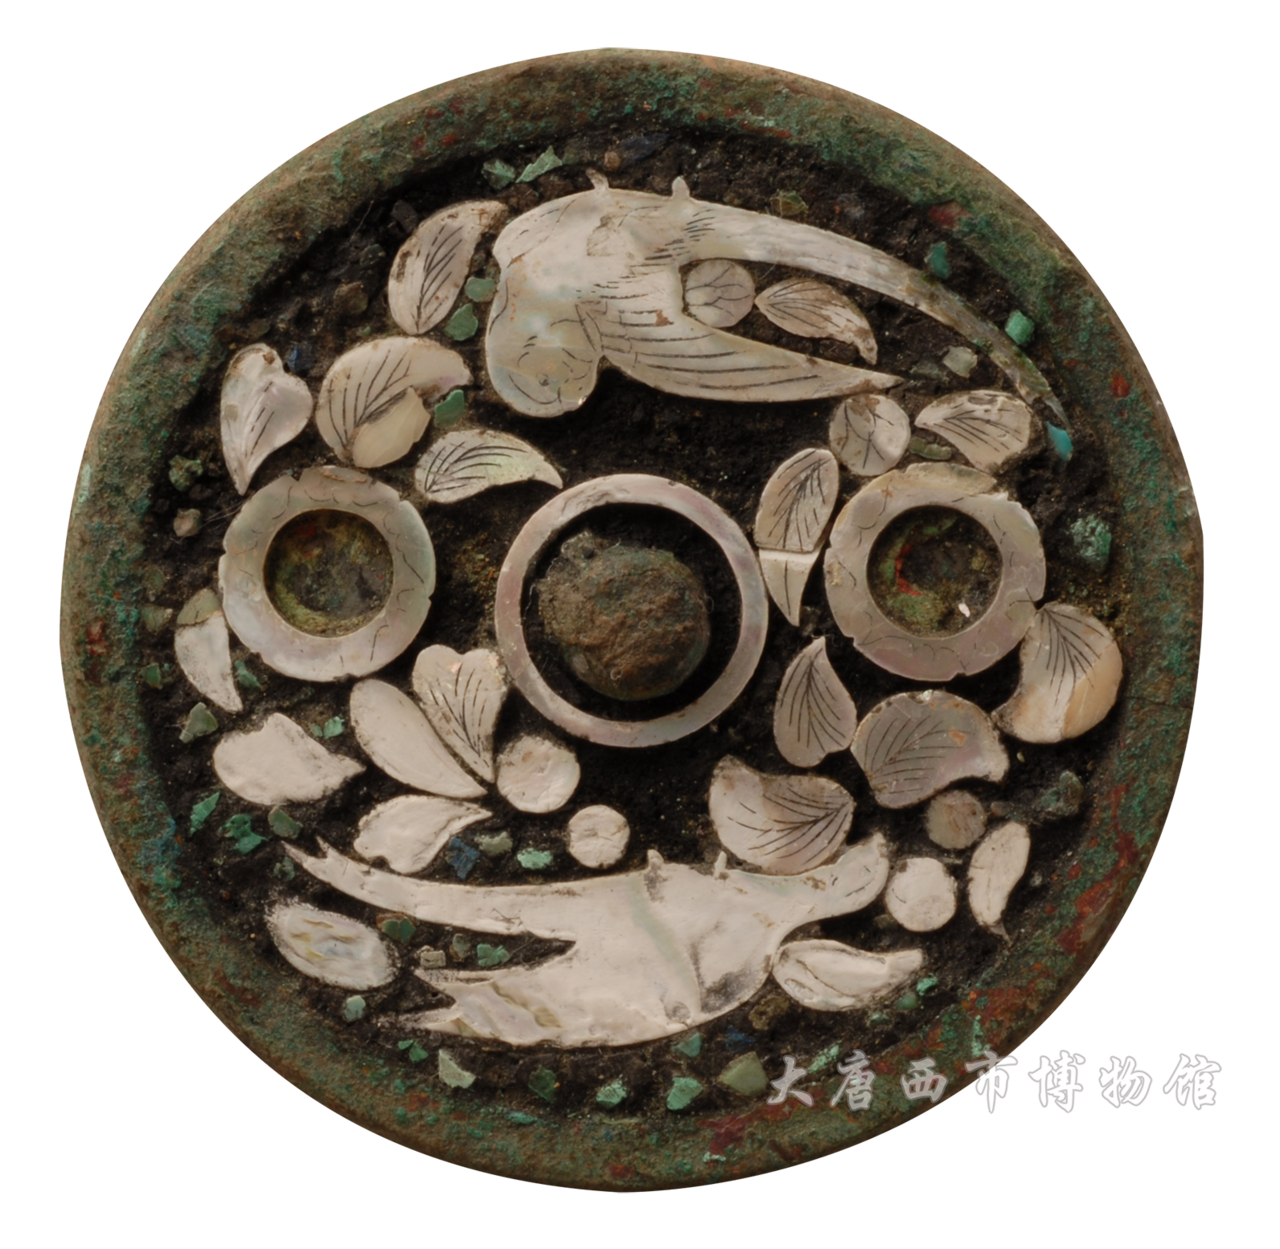 唐代鑲綠松石螺鈿鸚鵡紋銅鏡